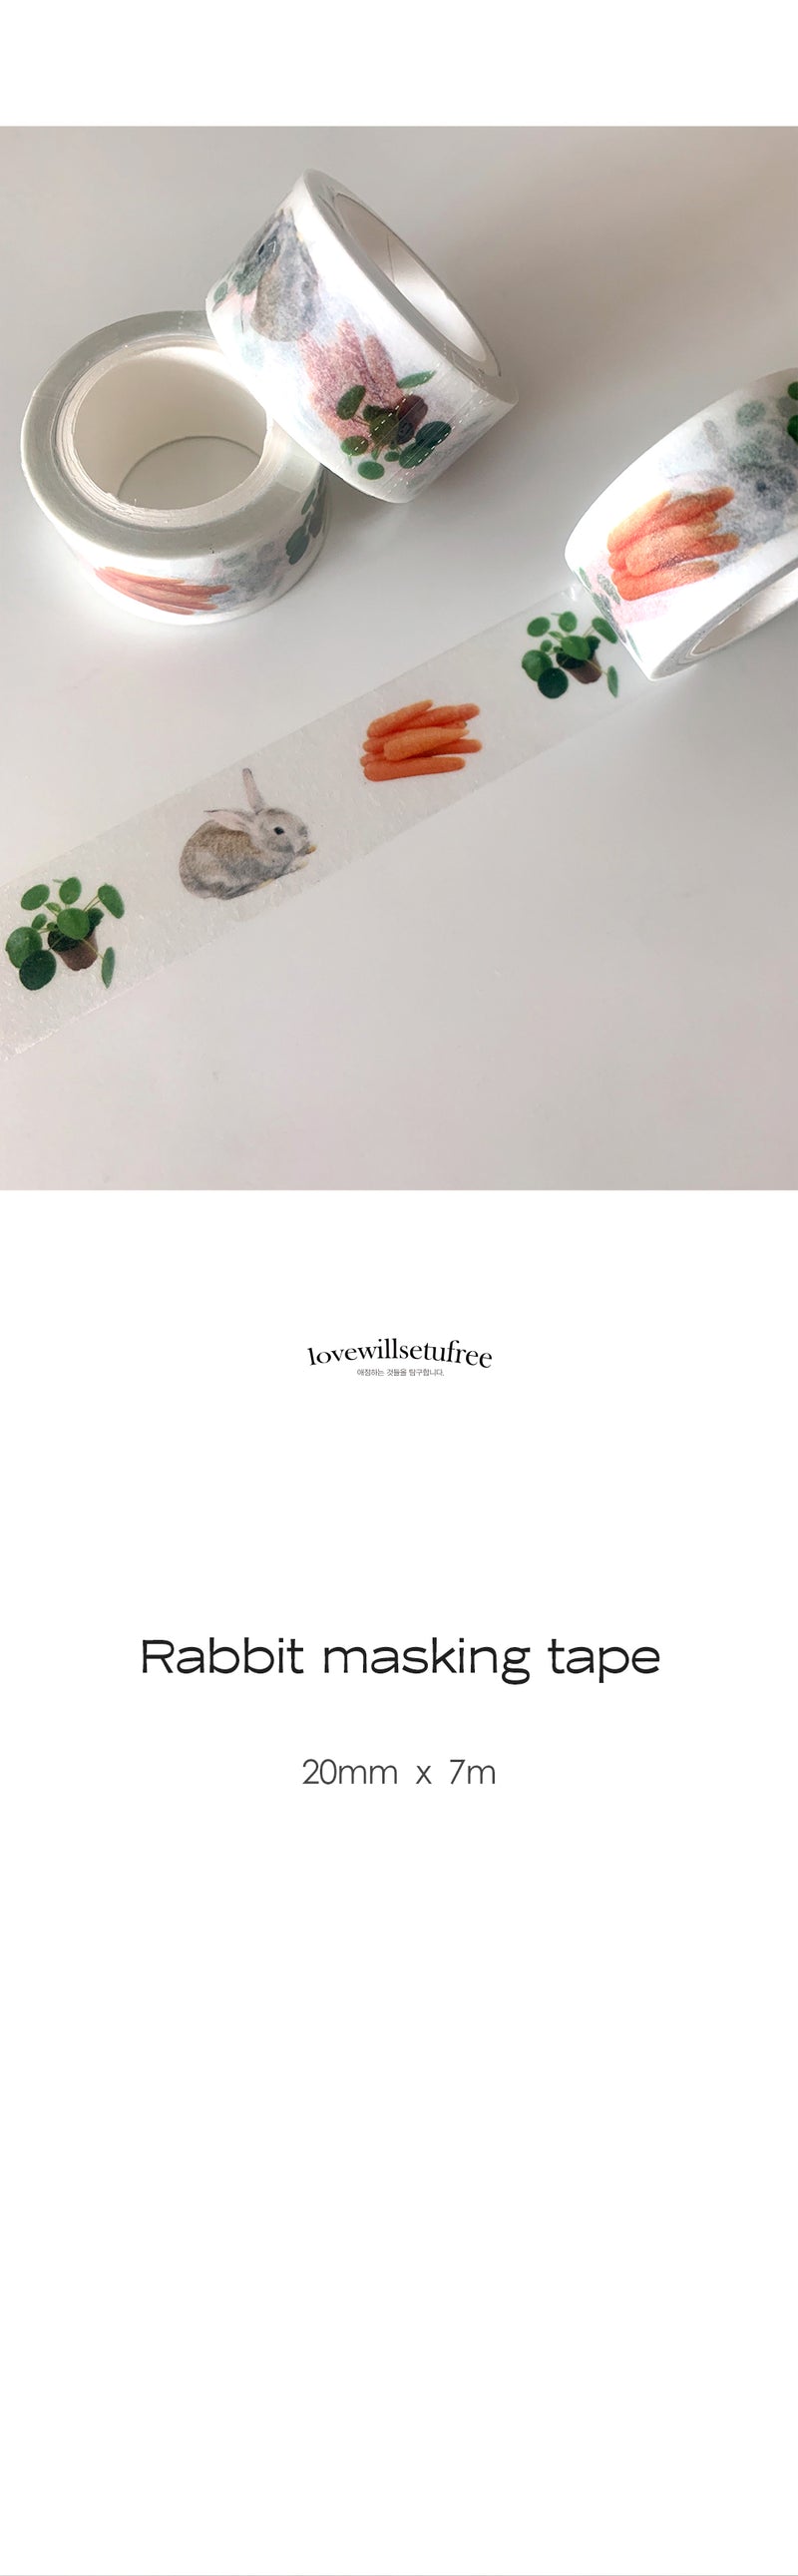 ラビットマスキングテープlovewillsetufree/Rabbit masking tape lovewillsetufree